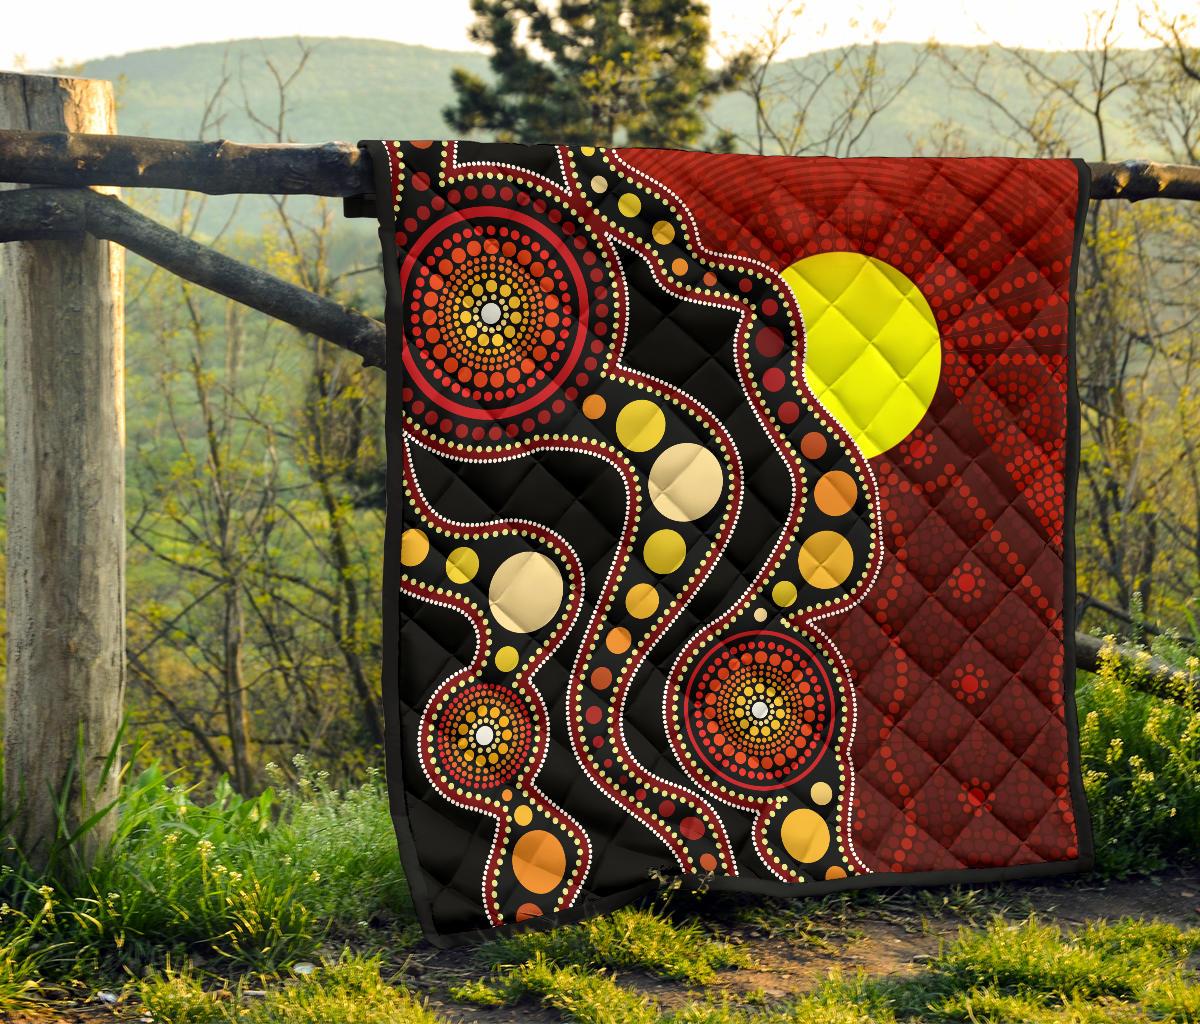 Aboriginal Premium Quilt - Australia Aboriginal Lives Matter Flag Circle Dot Painting Art Quilt